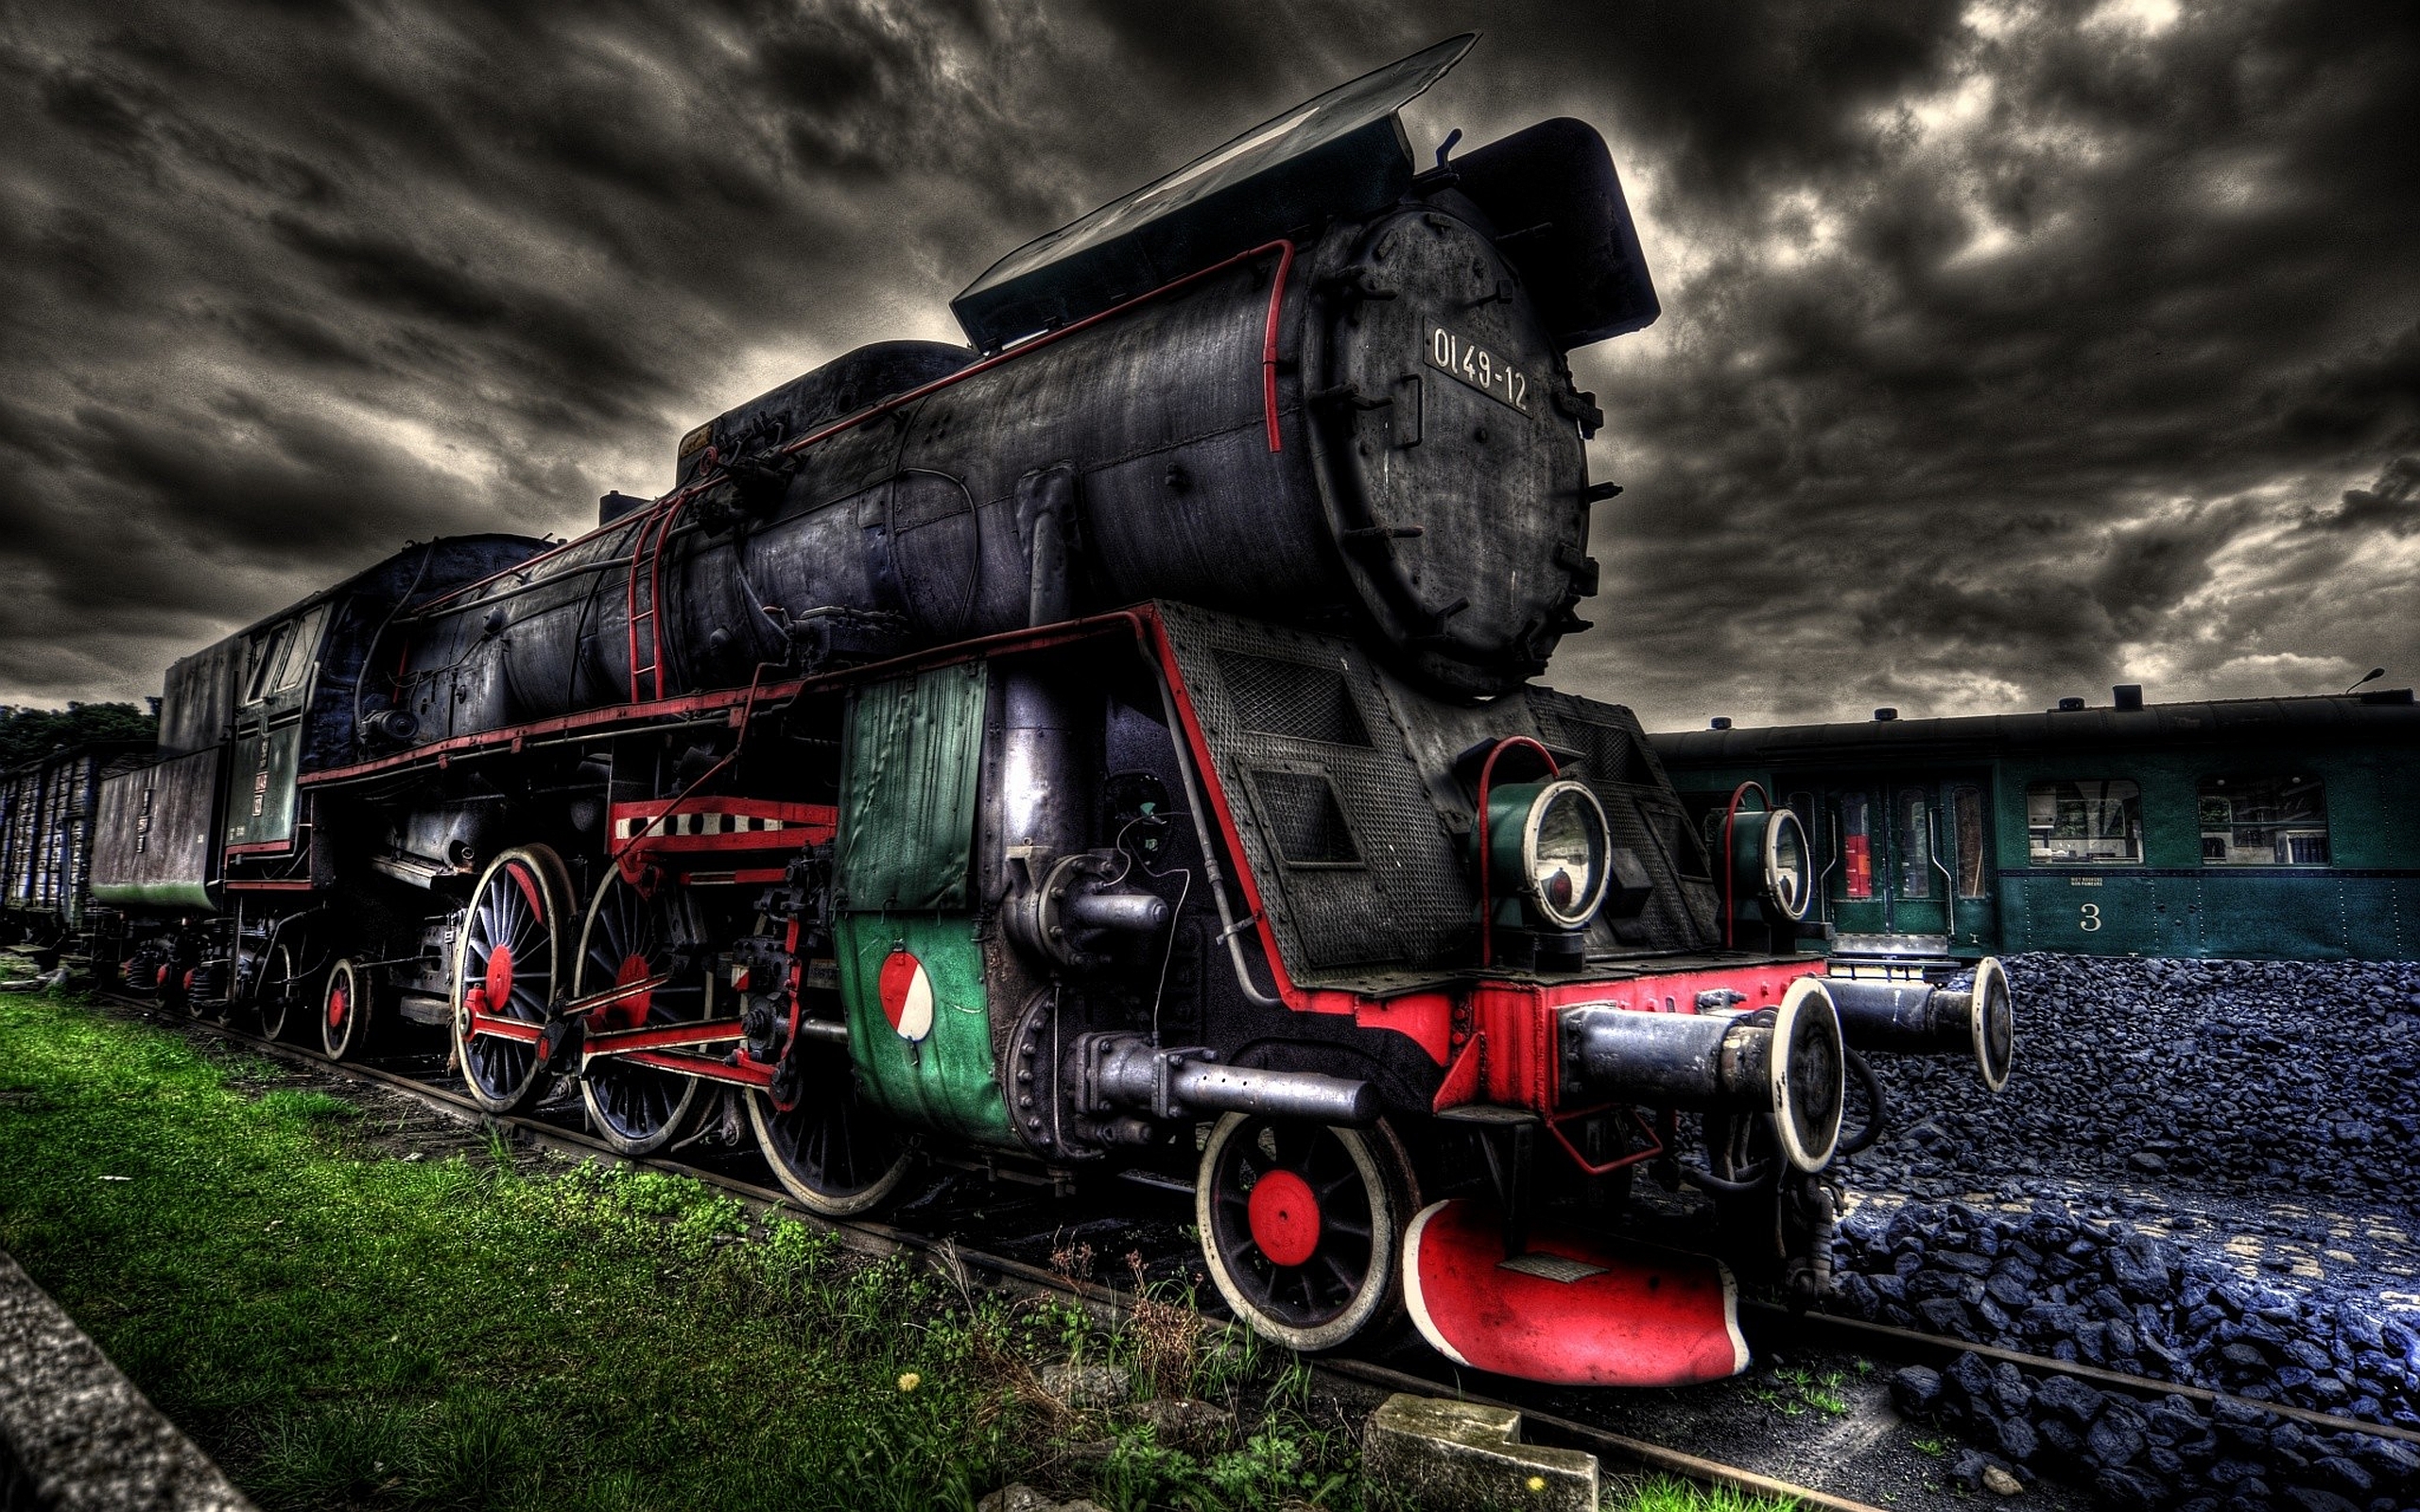 fond d'écran train hd,machine à vapeur,locomotive,véhicule,train,chemin de fer